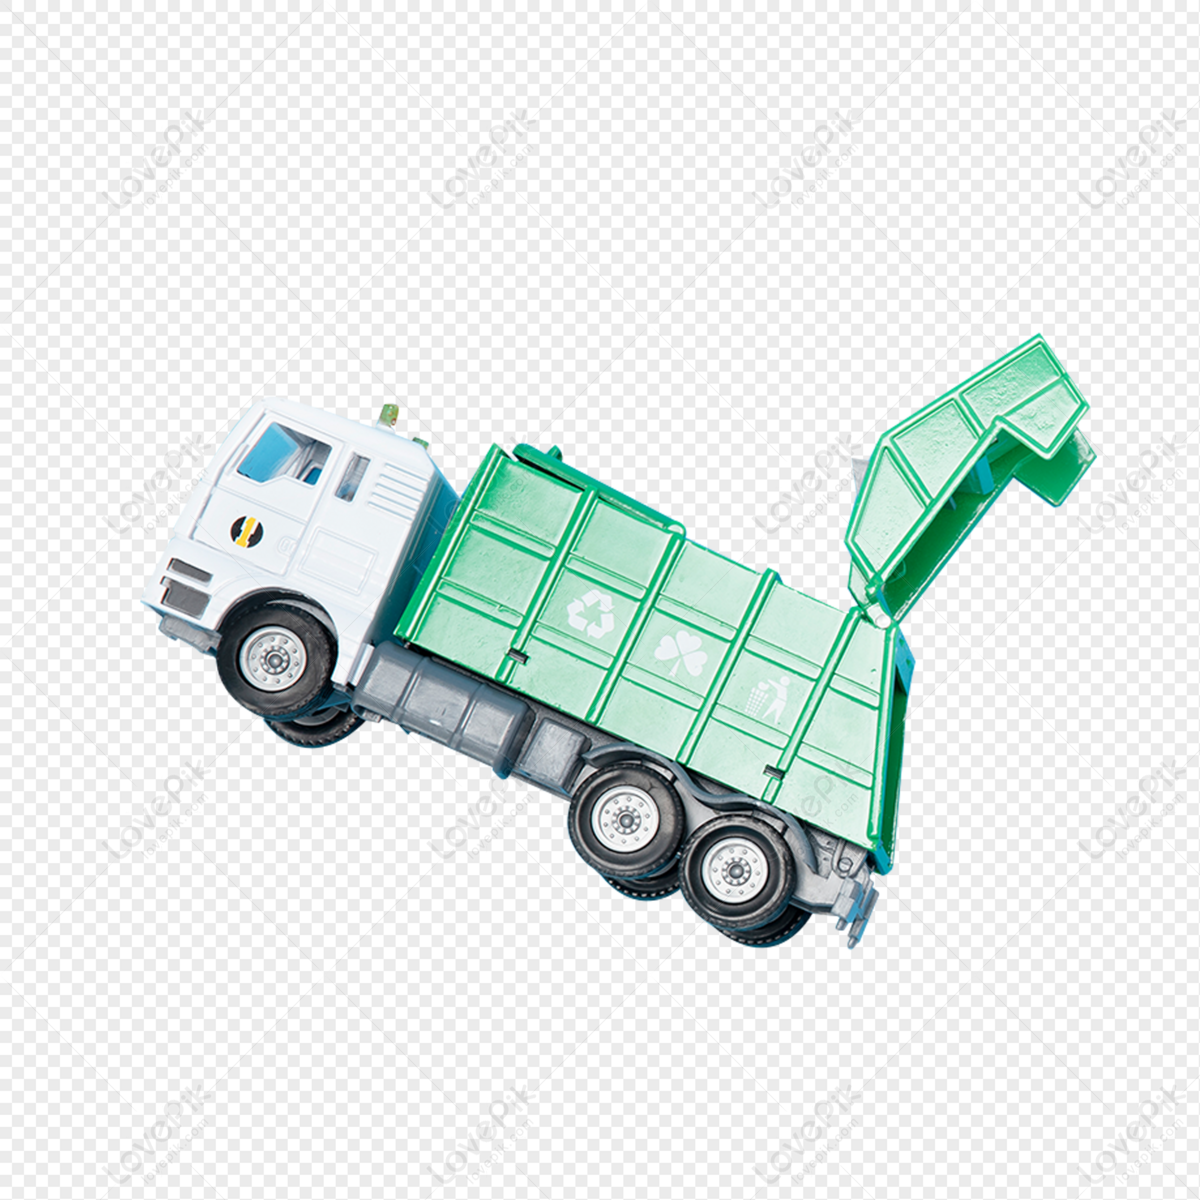 Caminhão Truck PNG - Imagem de Caminhão Truck PNG Gratuita